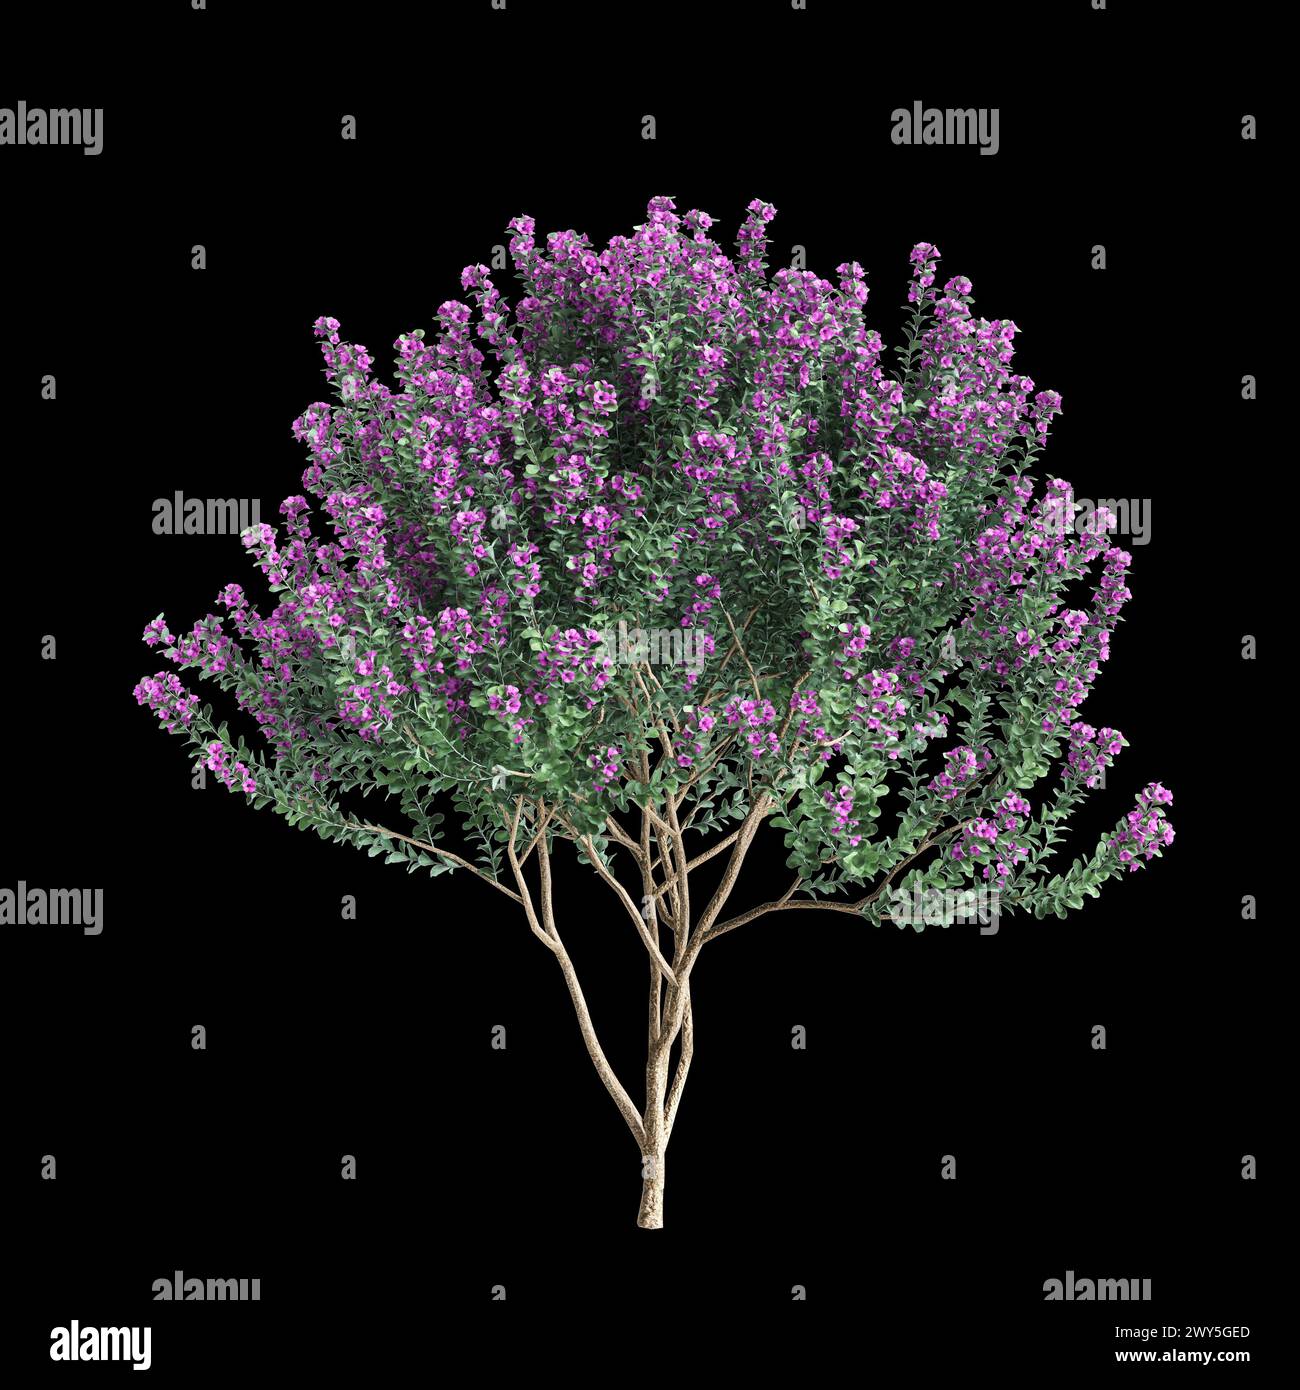 3d illustration of Leucophyllum frutescens bush isolated on black background Stock Photo